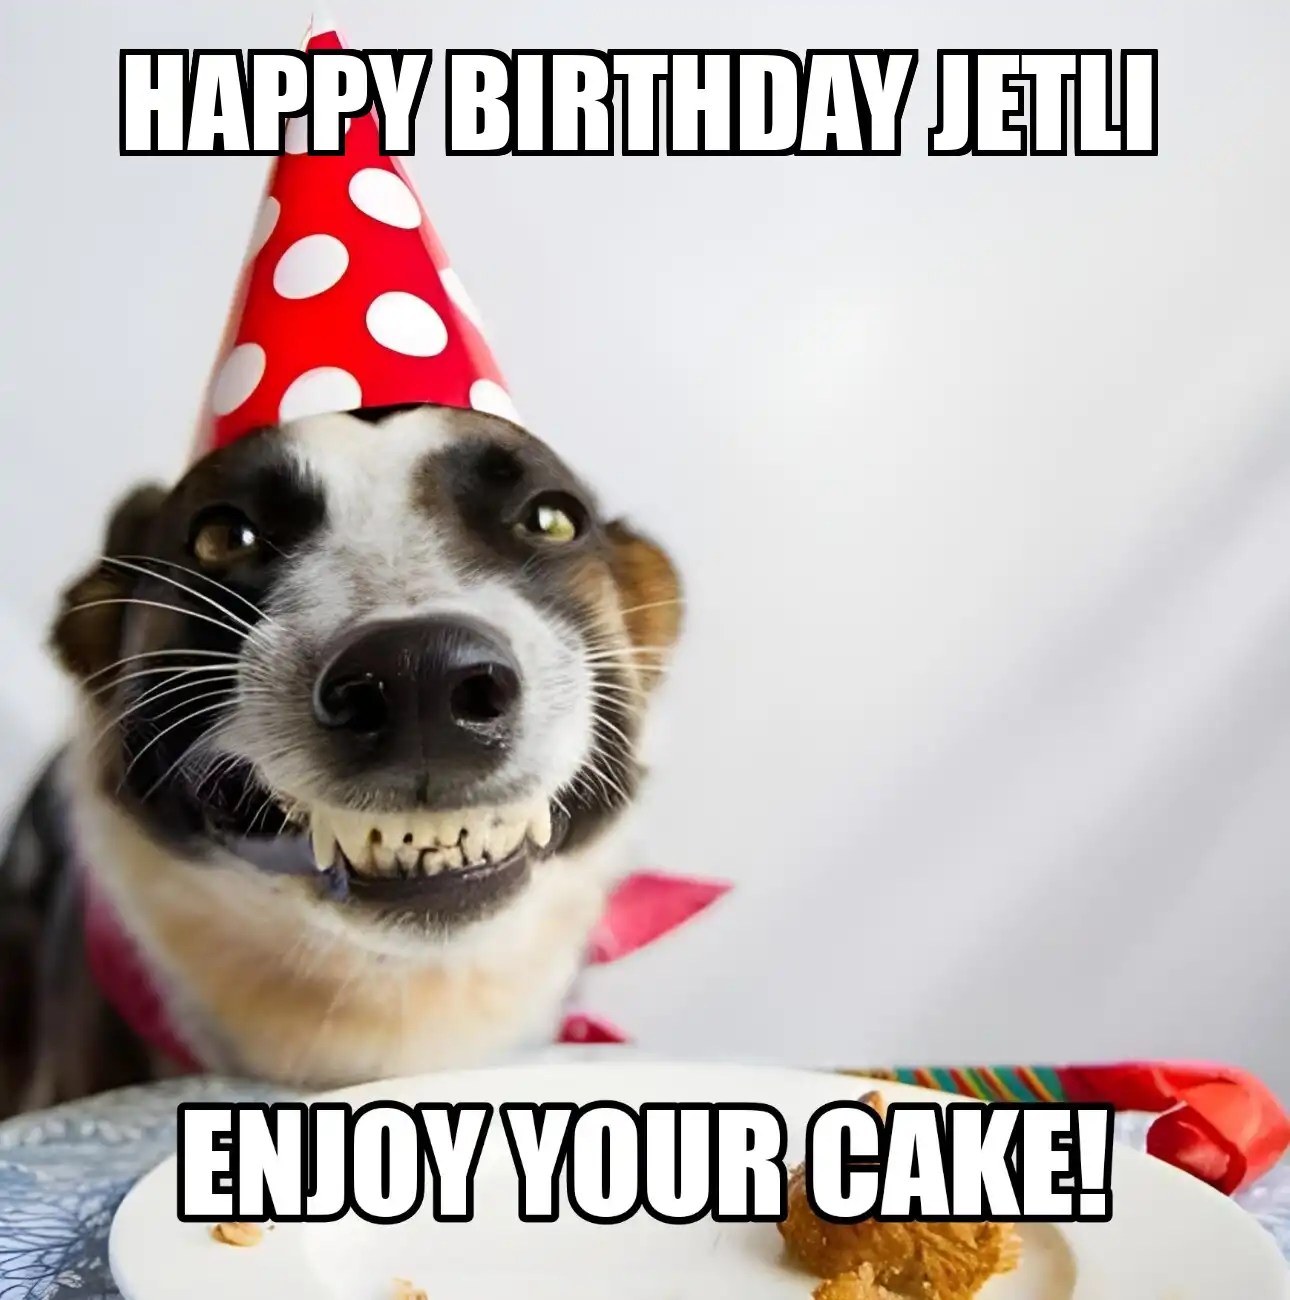 Happy Birthday Jetli Enjoy Your Cake Dog Meme